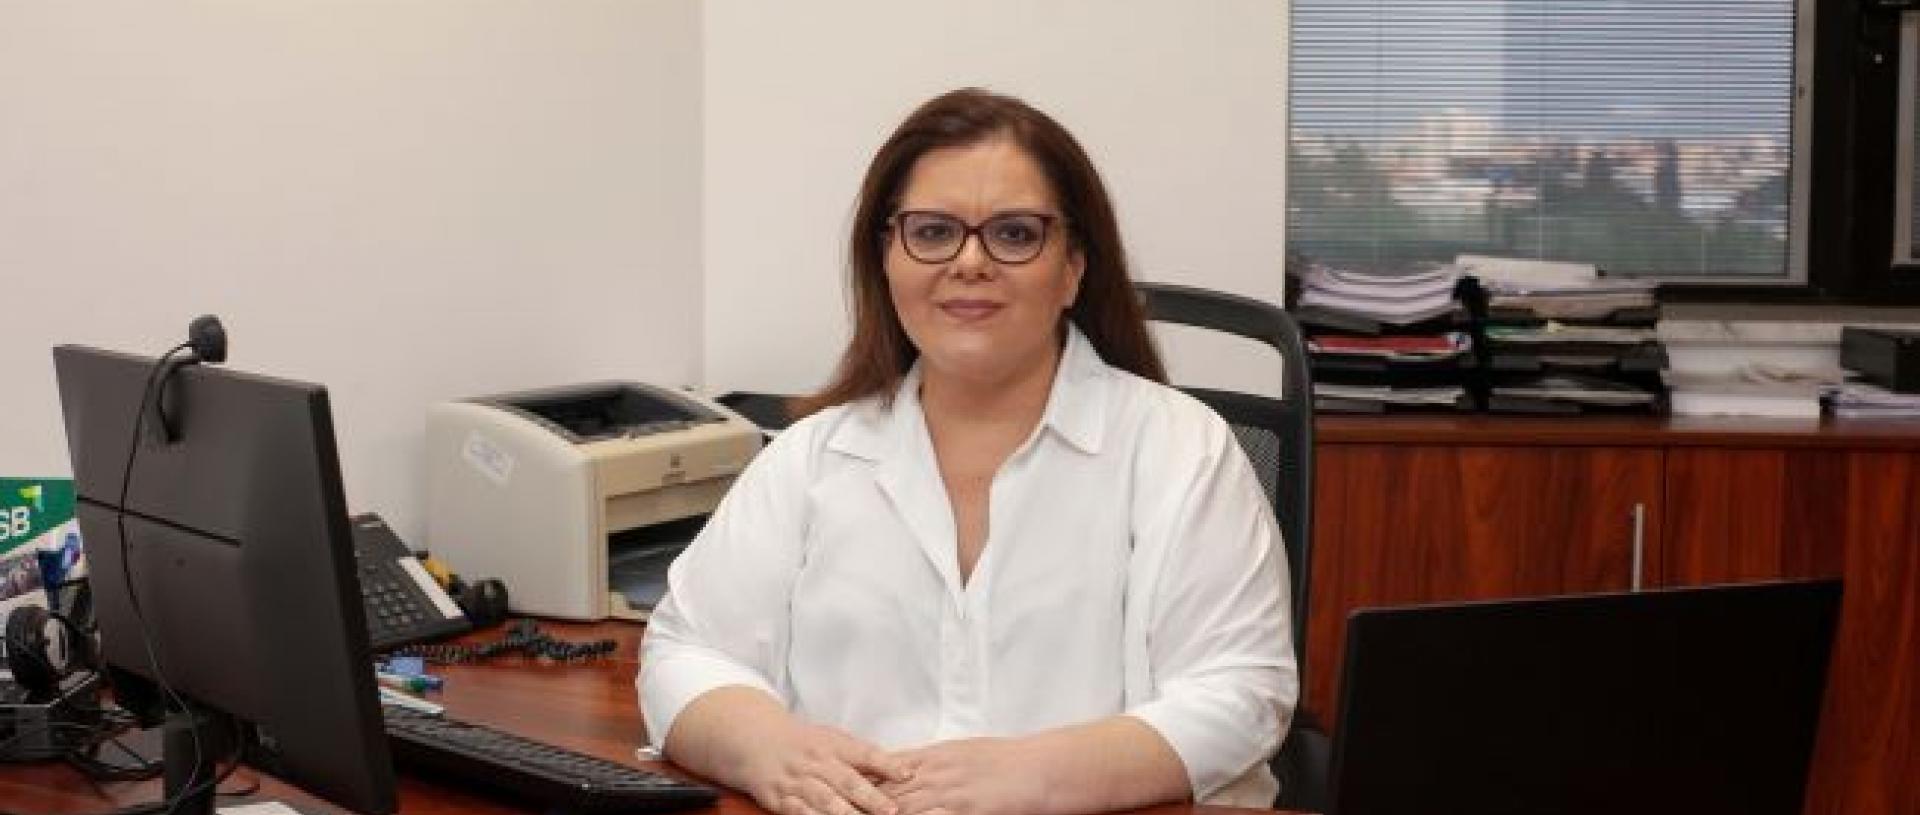 Καθηγήτρια Αγγελική Κοκκινάκη: Είμαστε η κορυφαία Σχολή Διοίκησης Επιχειρήσεων σε Ελλάδα και Κύπρο